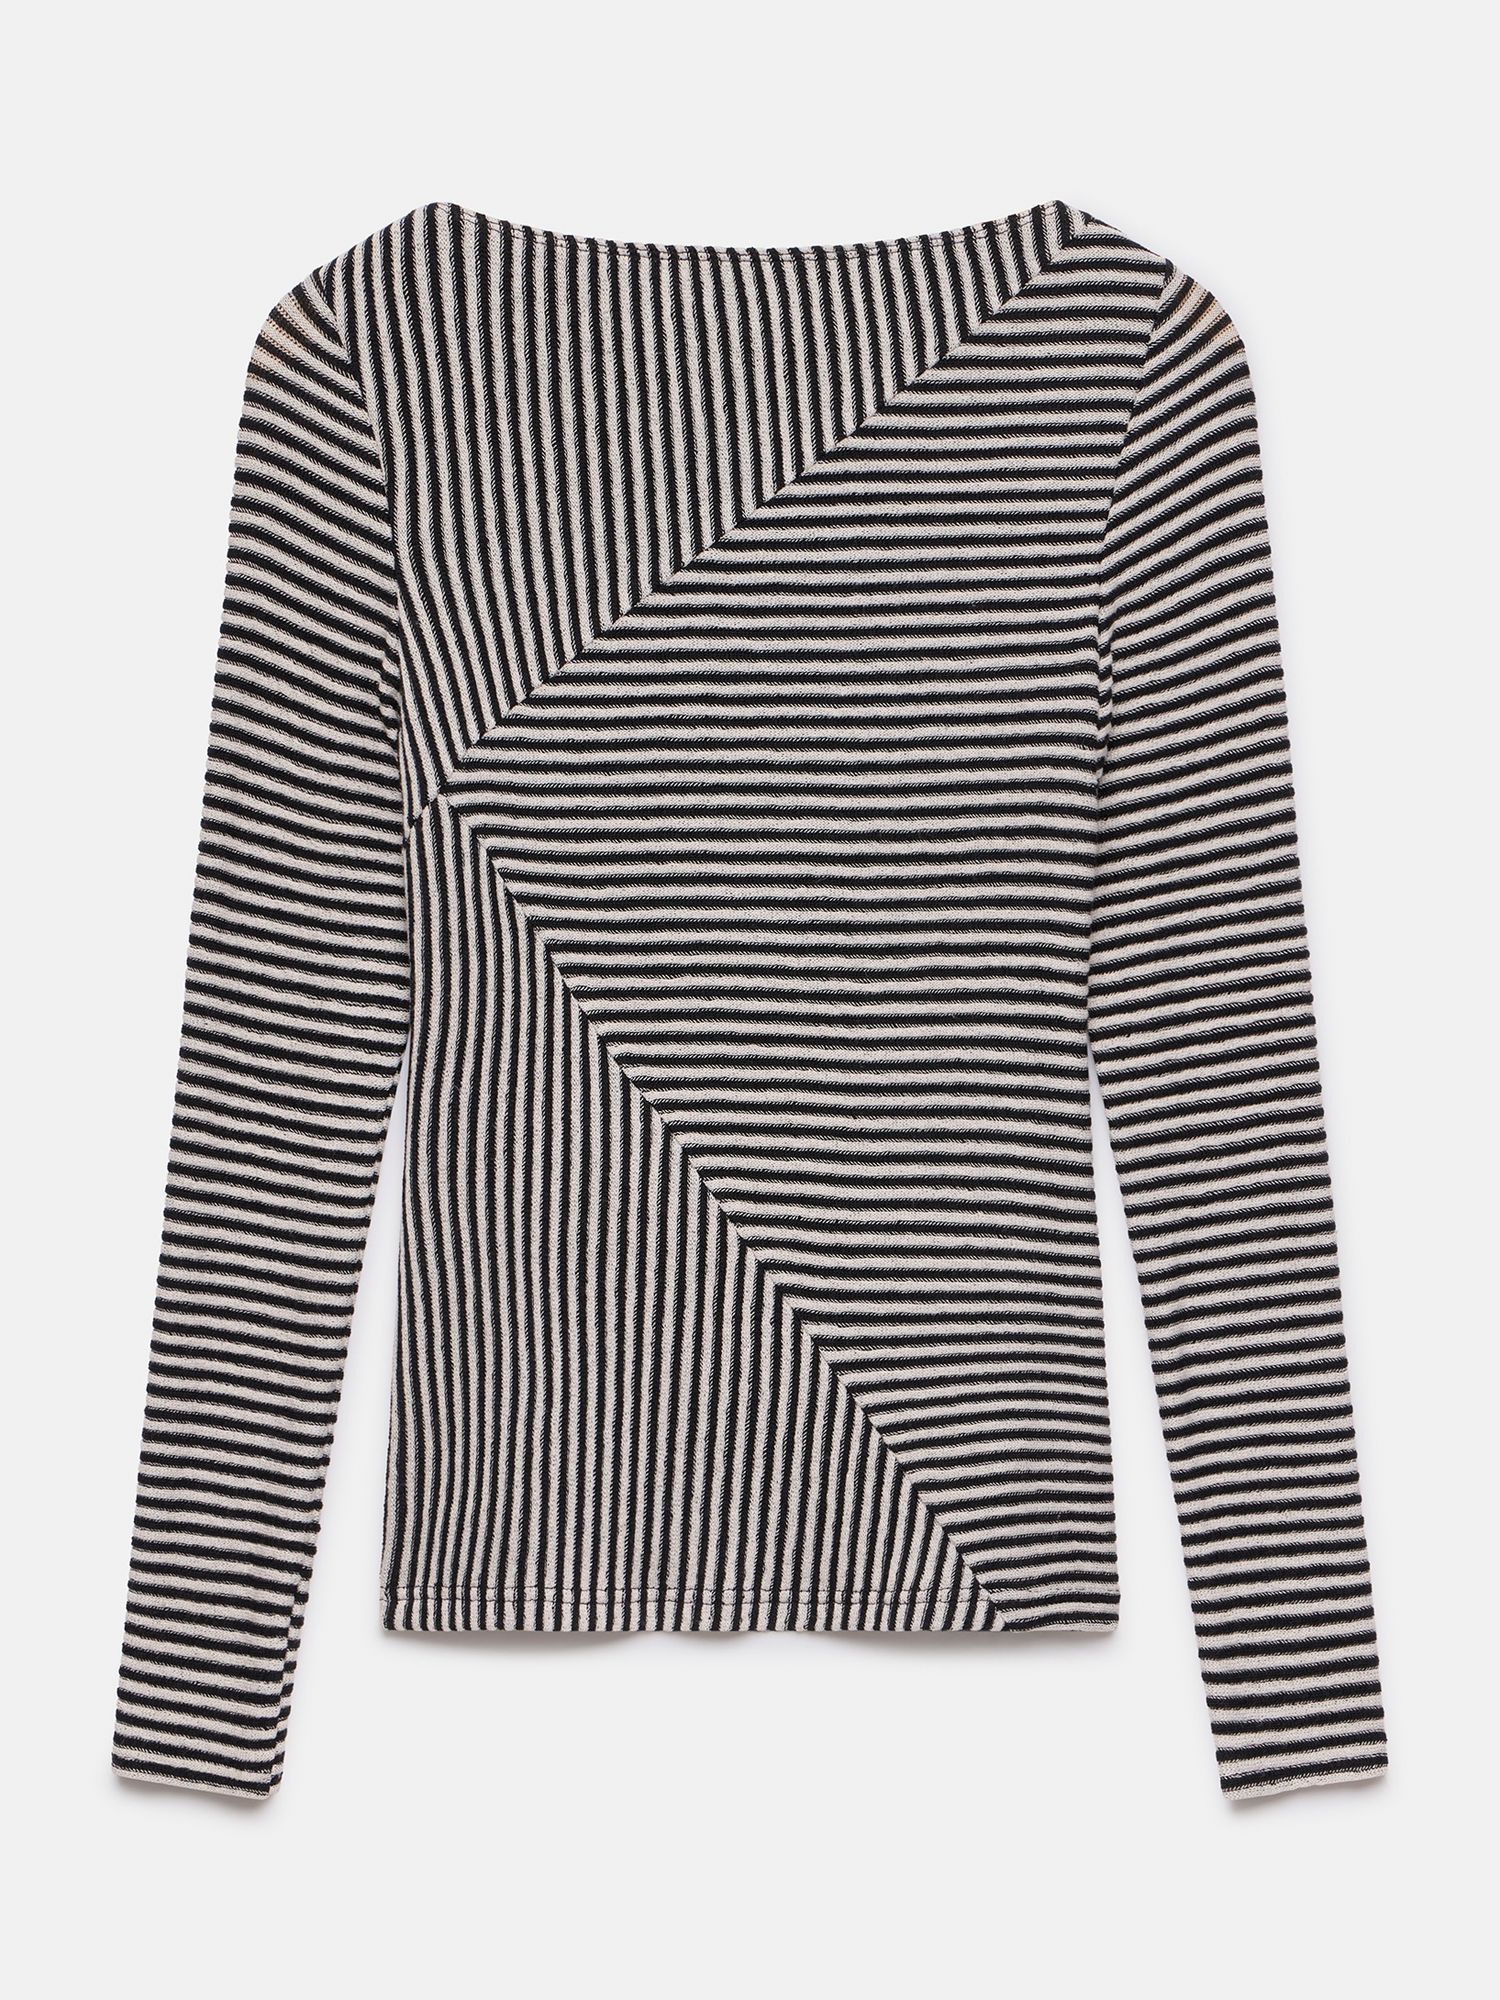 Mint Velvet Black Striped Long Sleeve Top, Black/White, M